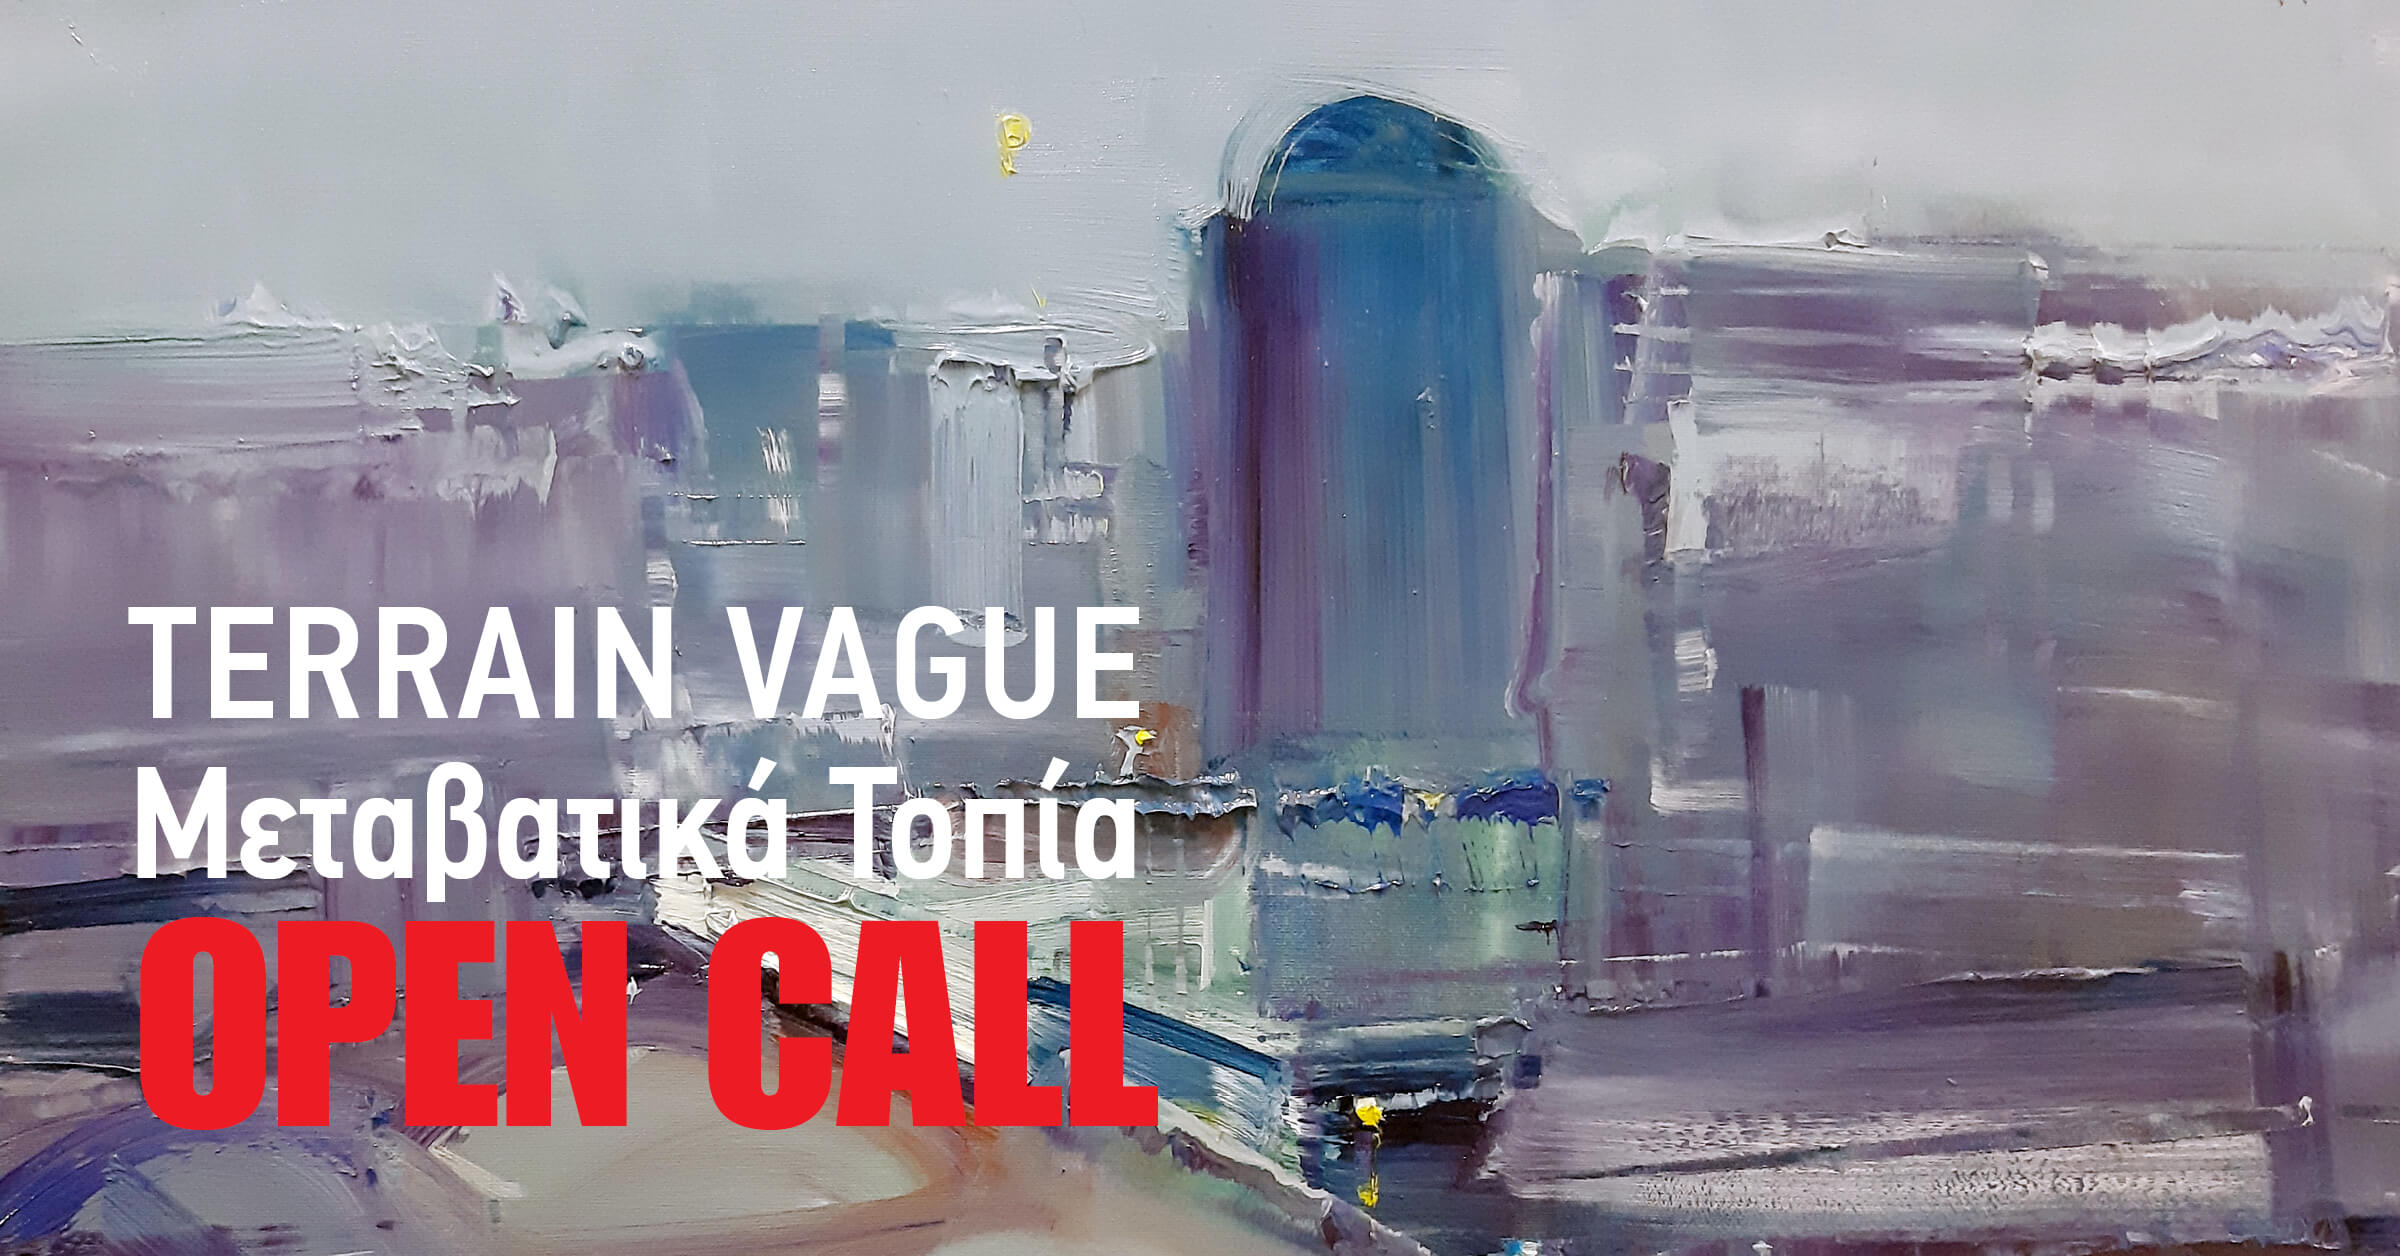 Τerrain vague -Μεταβατικά Τοπία | Πρόσκληση ενδιαφέροντος προς εικαστικούς καλλιτέχνες